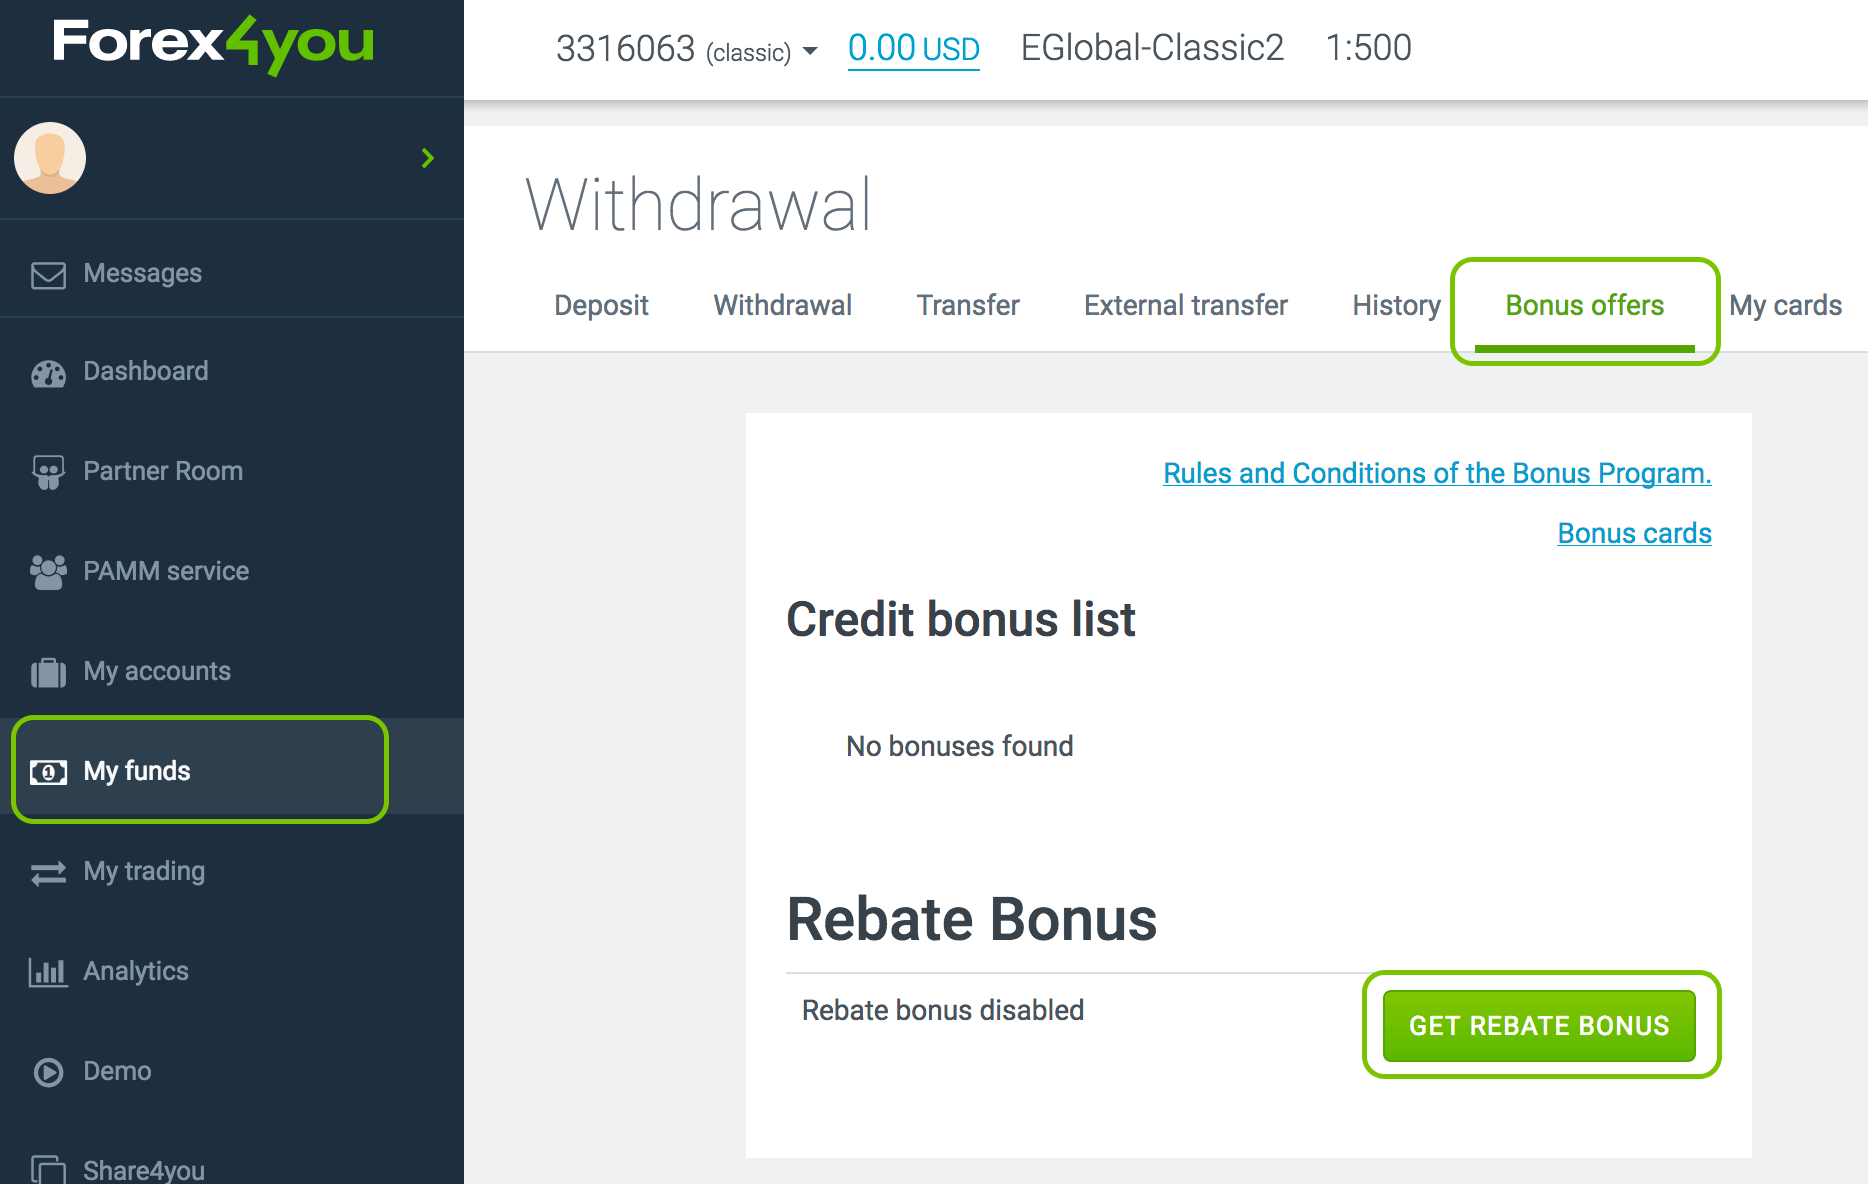 Get rebate bonus